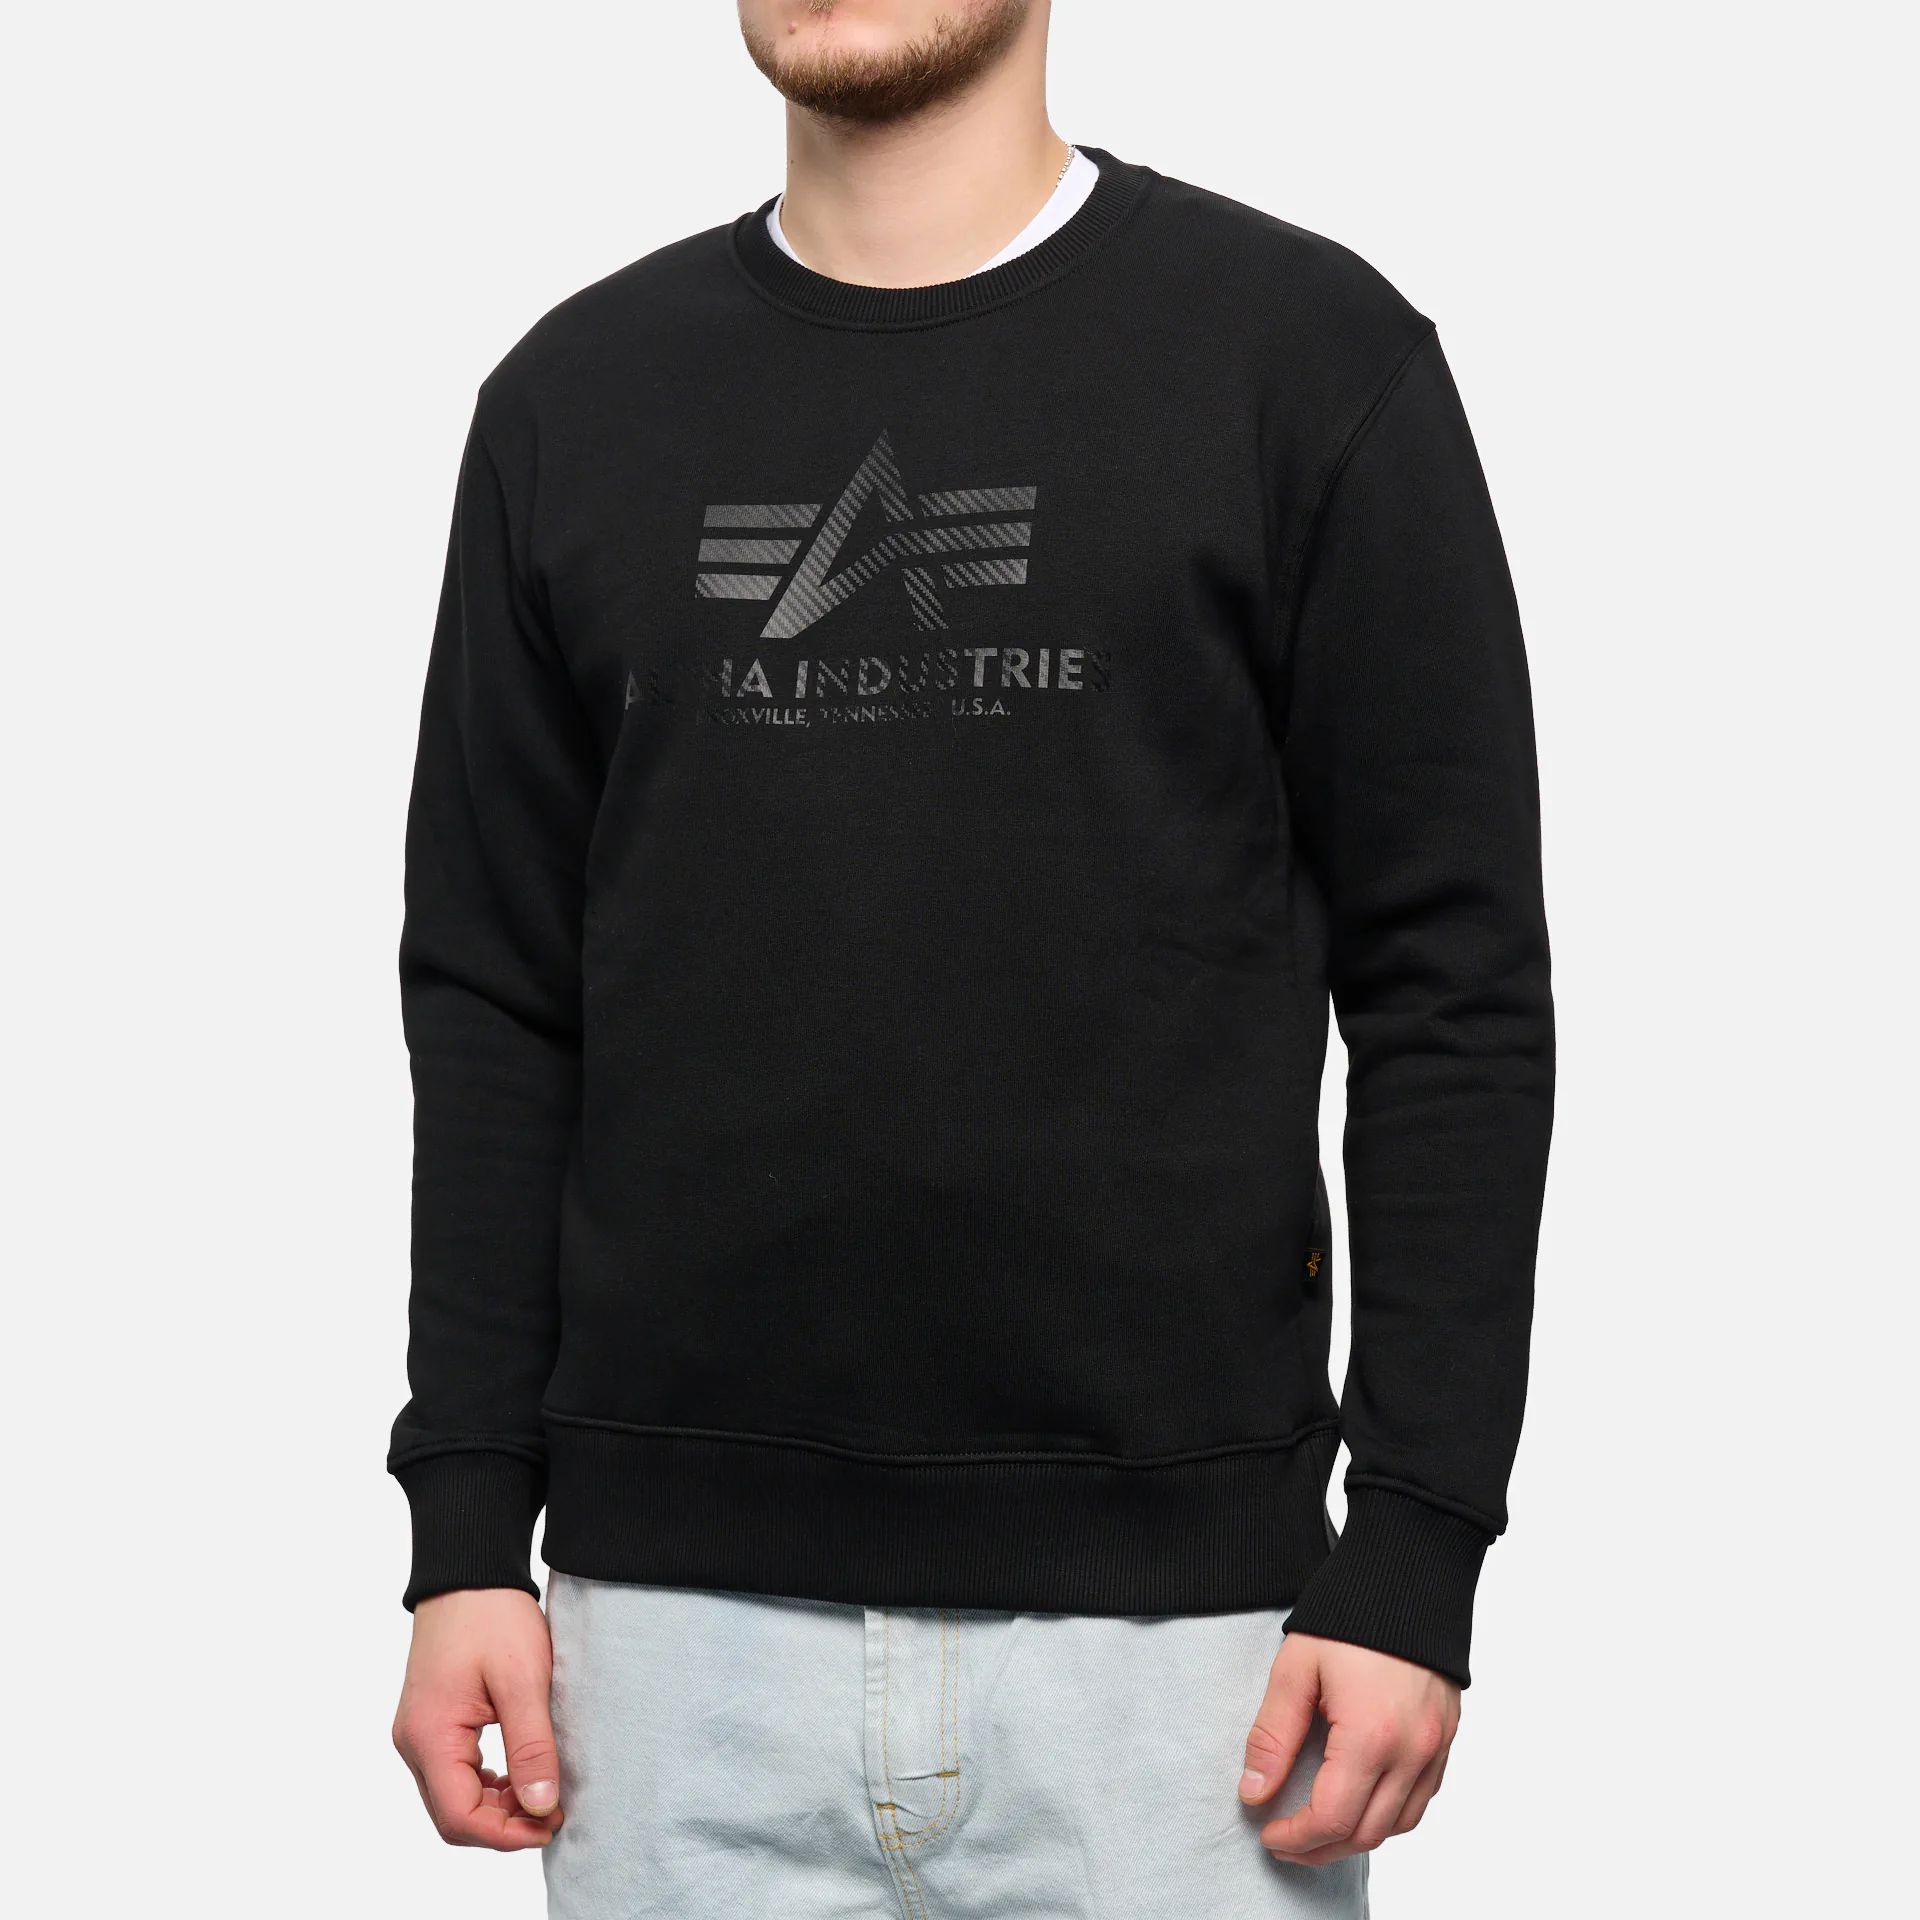 Pullover für Männer online kaufen bei ✧ FAST FORWARD | Sweatshirts